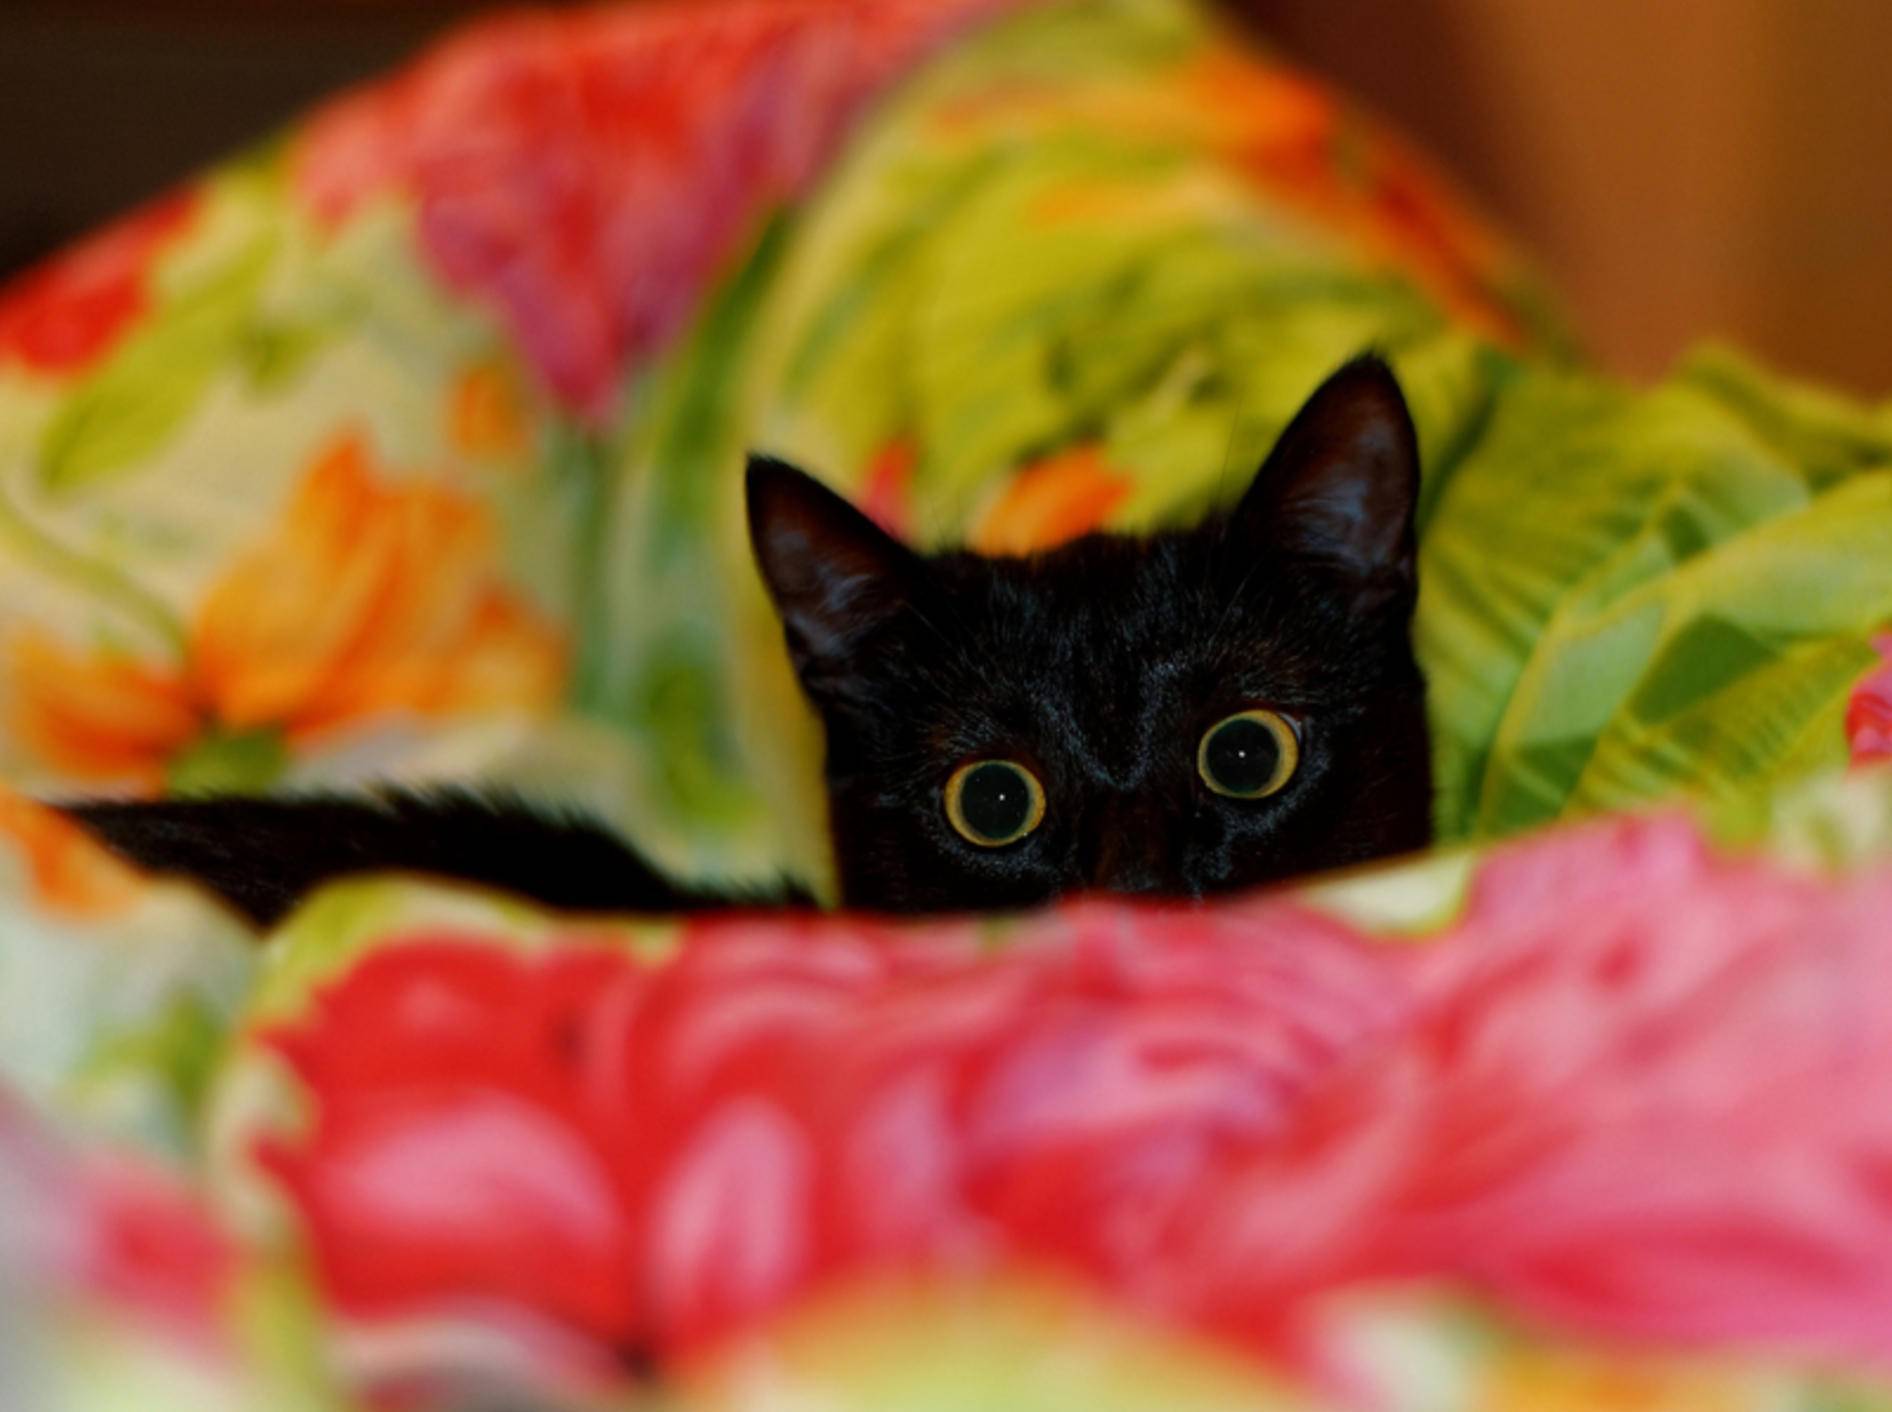 "Oh je, da kommt wieder das lärmende Ungeheuer!": Kleine Katze hat Angst vorm Staubsauger – Shutterstock / Bleshka